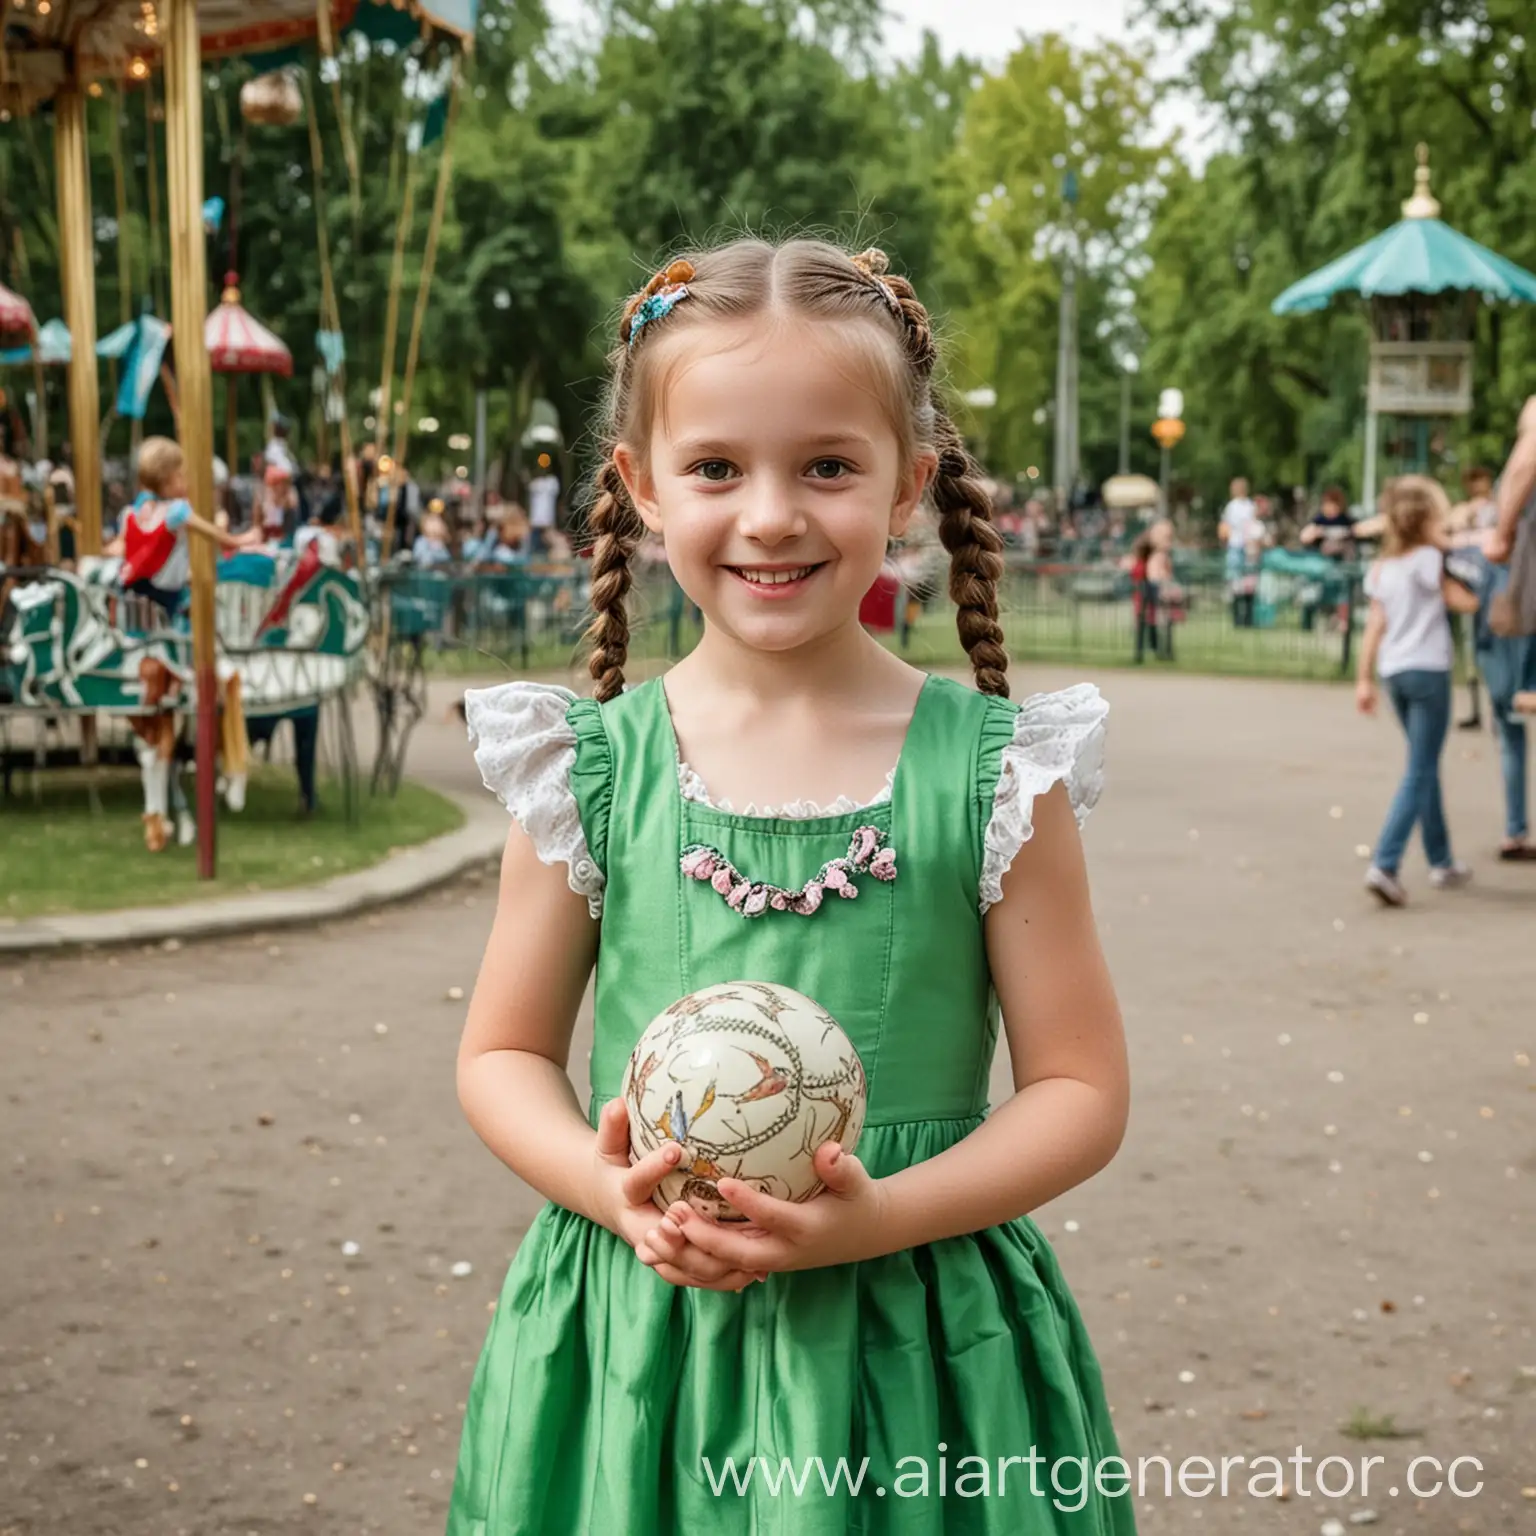 Реальная фотография. Парк. Лето. Карусели. Девочки 6 лет в зеленом платье. В руках держит шарик. Девочка улыбается. У девочки 2 косички.